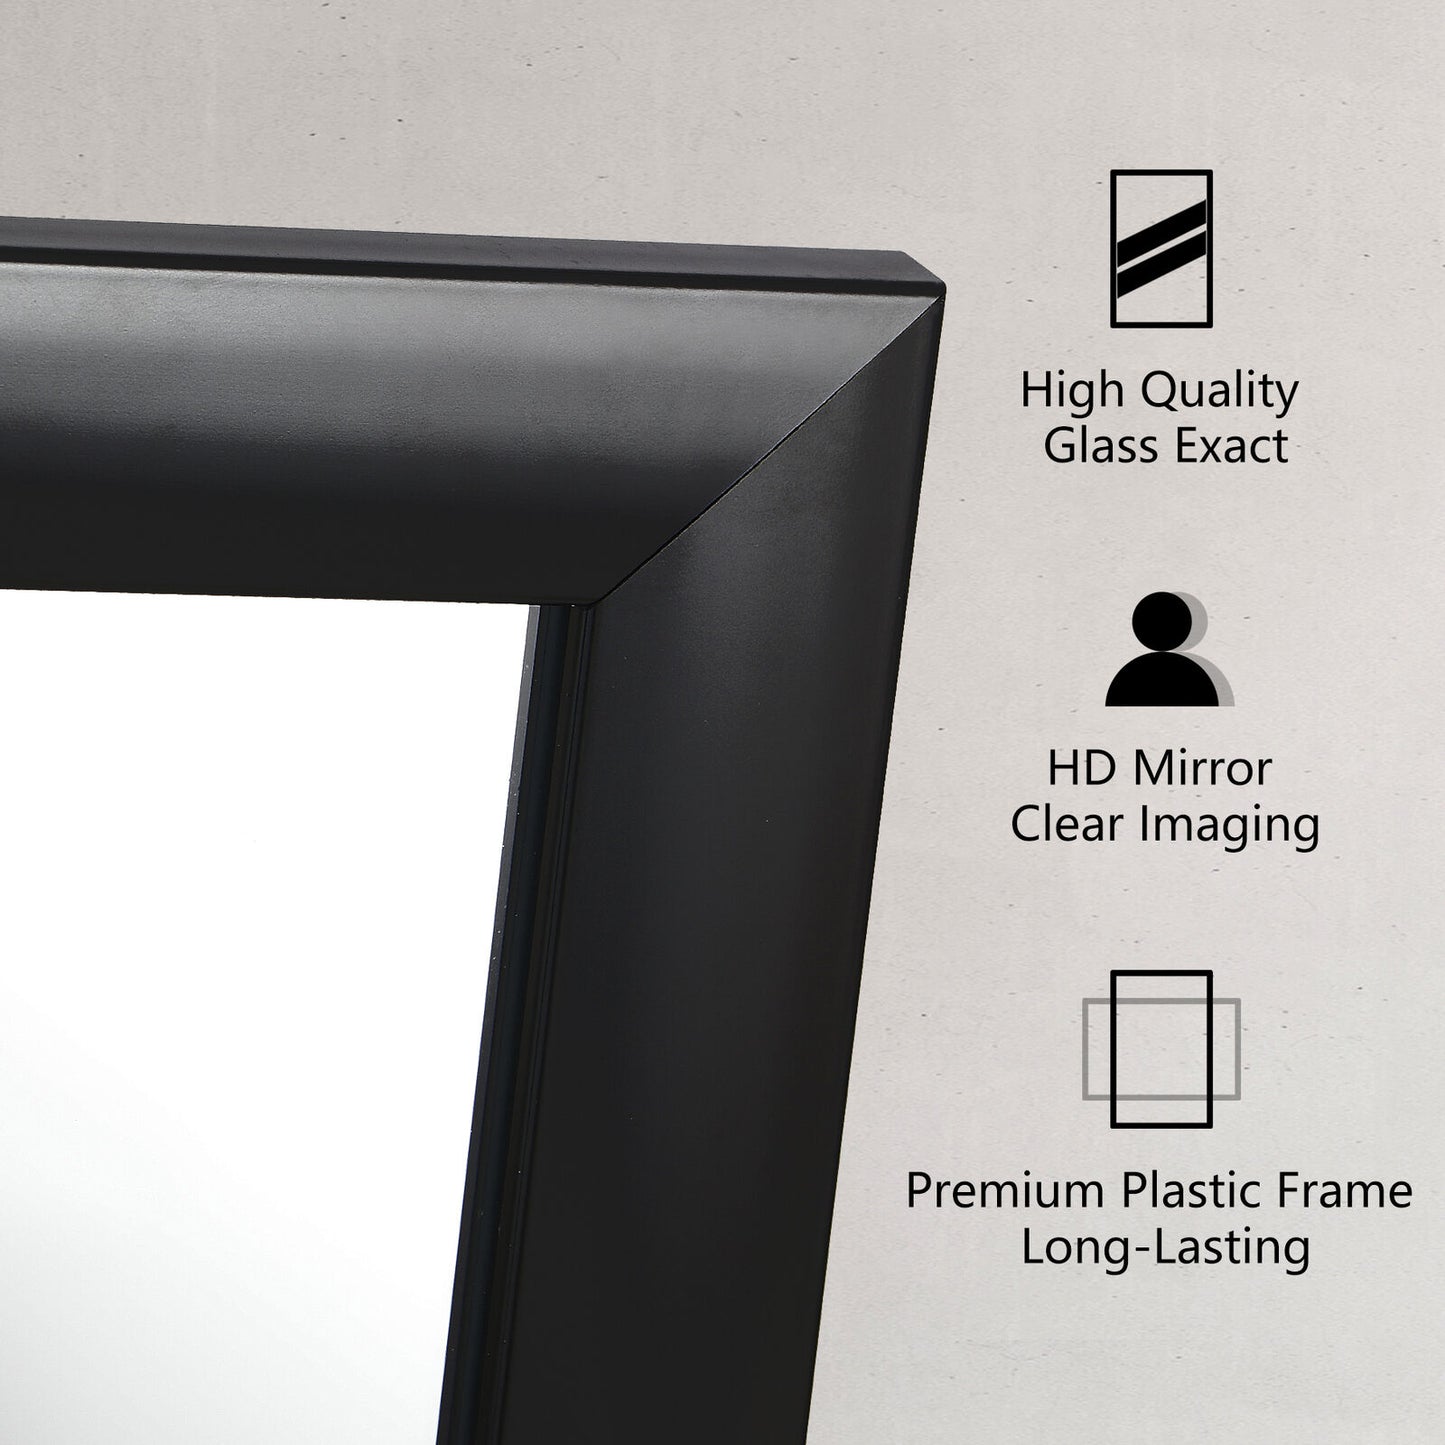 24"x36" Rectangular Modern Metal Frame Wall Mirror for Bathroom Washroom Black